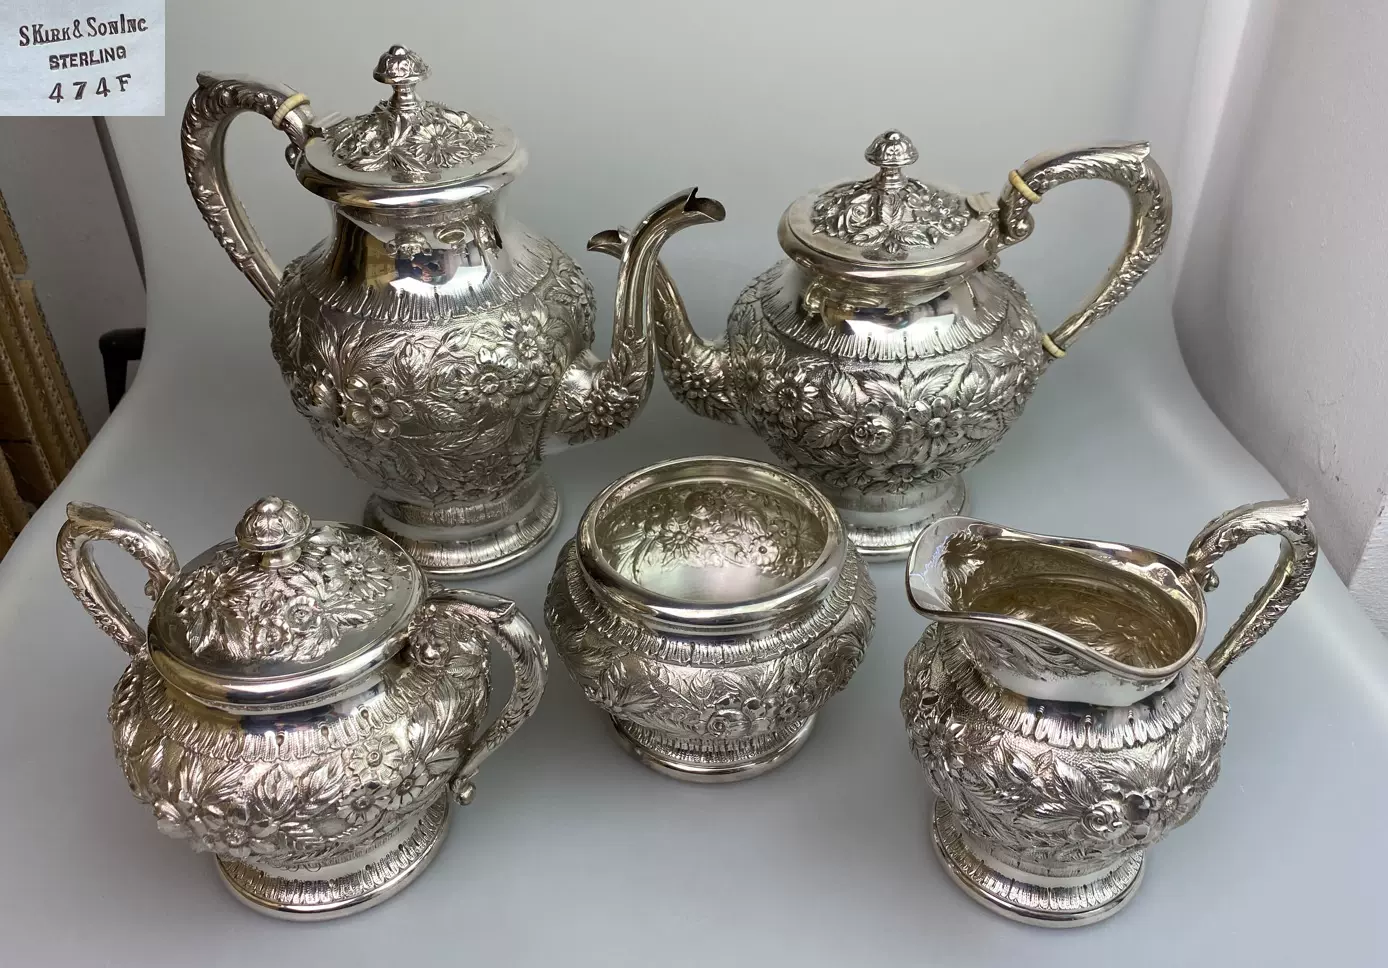 20世纪初期美国经典老银器-Kirk马里兰玫瑰茶具5件套-Taobao